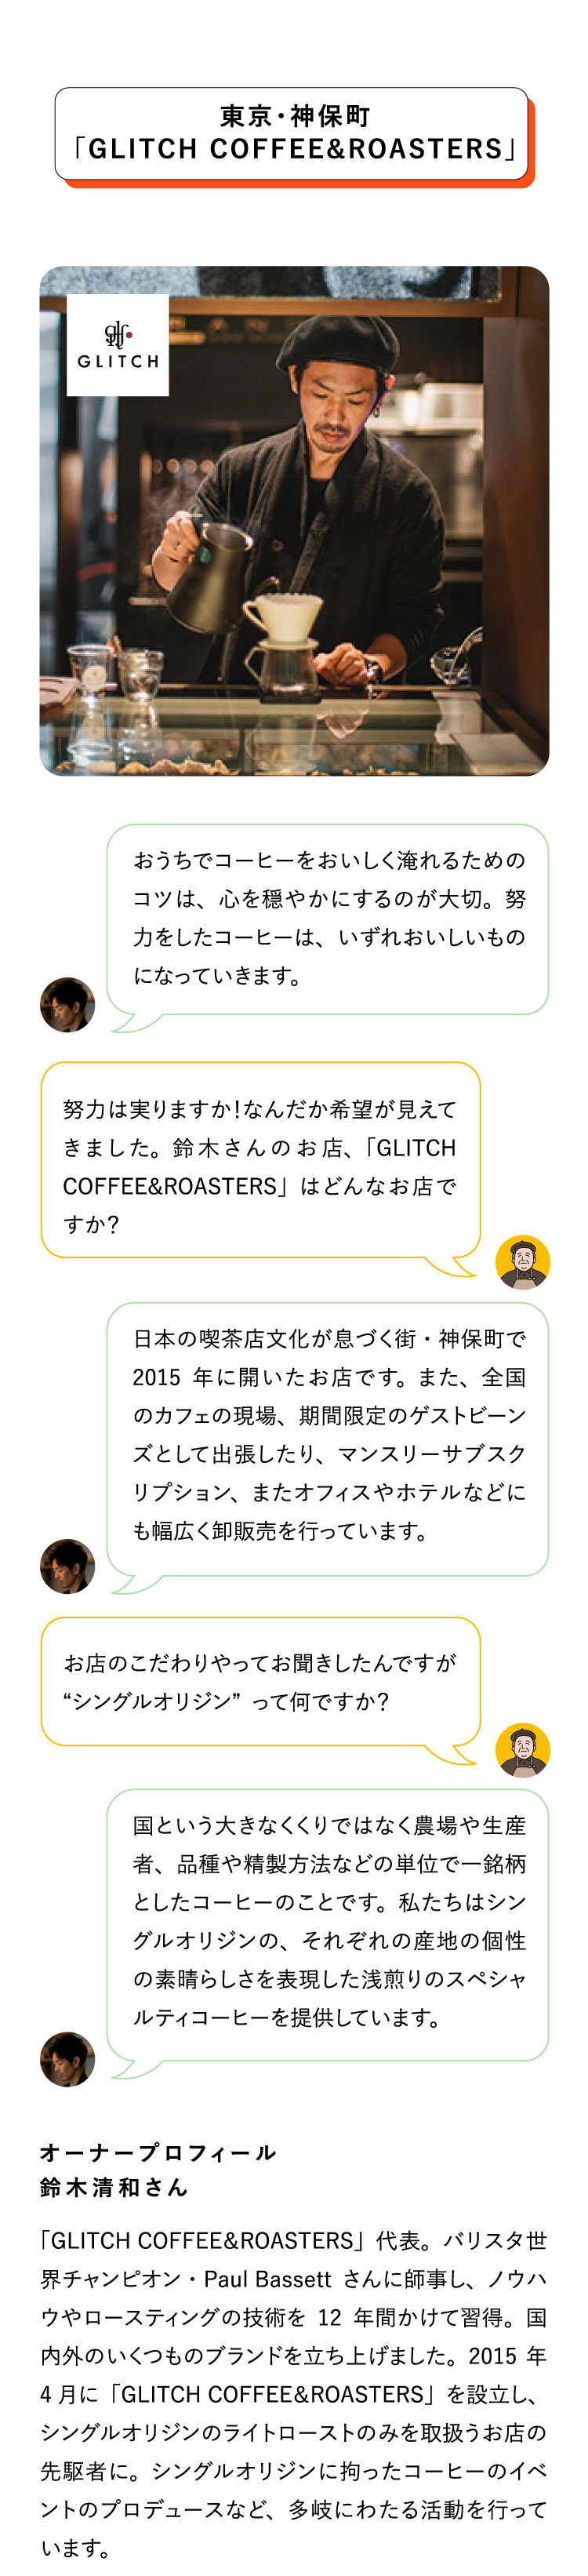 東京・神保町
                               「GLITCH COFFEE&ROASTERS」「GLITCH COFFEE＆ROASTERS」代表。バリスタ世界チャンピオン・Paul
                               Bassettさんに師事し、ノウハウやロースティングの技術を12年間かけて習得。国内外のいくつものブランドを立ち上げました。2015年4月に「GLITCH
                               COFFEE＆ROASTERS」を設立し、
                               シングルオリジンのライトローストのみを取扱うお店の先駆者に。シングルオリジンに拘ったコーヒーのイベントのプロデュースなど、多岐にわたる活動を行っています。

                               オーナープロフィール
                               鈴木清和さんお店のこだわりやってお聞きしたんですが“シングルオリジン”って何ですか？努力は実りますか！なんだか希望が見えてきました。鈴木さんのお店、「GLITCH
                               COFFEE&ROASTERS」はどんなお店ですか？国という大きなくくりではなく農場や生産者、品種や精製方法などの単位で一銘柄としたコーヒーのことです。私たちはシングルオリジンの、それぞれの産地の個性の素晴らしさを表現した浅煎りのスペシャルティコーヒーを提供しています。おうちでコーヒーをおいしく淹れるためのコツは、心を穏やかにするのが大切。努力をしたコーヒーは、いずれおいしいものになっていきます。日本の喫茶店文化が息づく街・神保町で2015年に開いたお店です。また、全国のカフェの現場、期間限定のゲストビーンズとして出張したり、マンスリーサブスクリプション、またオフィスやホテルなどにも幅広く卸販売を行っています。